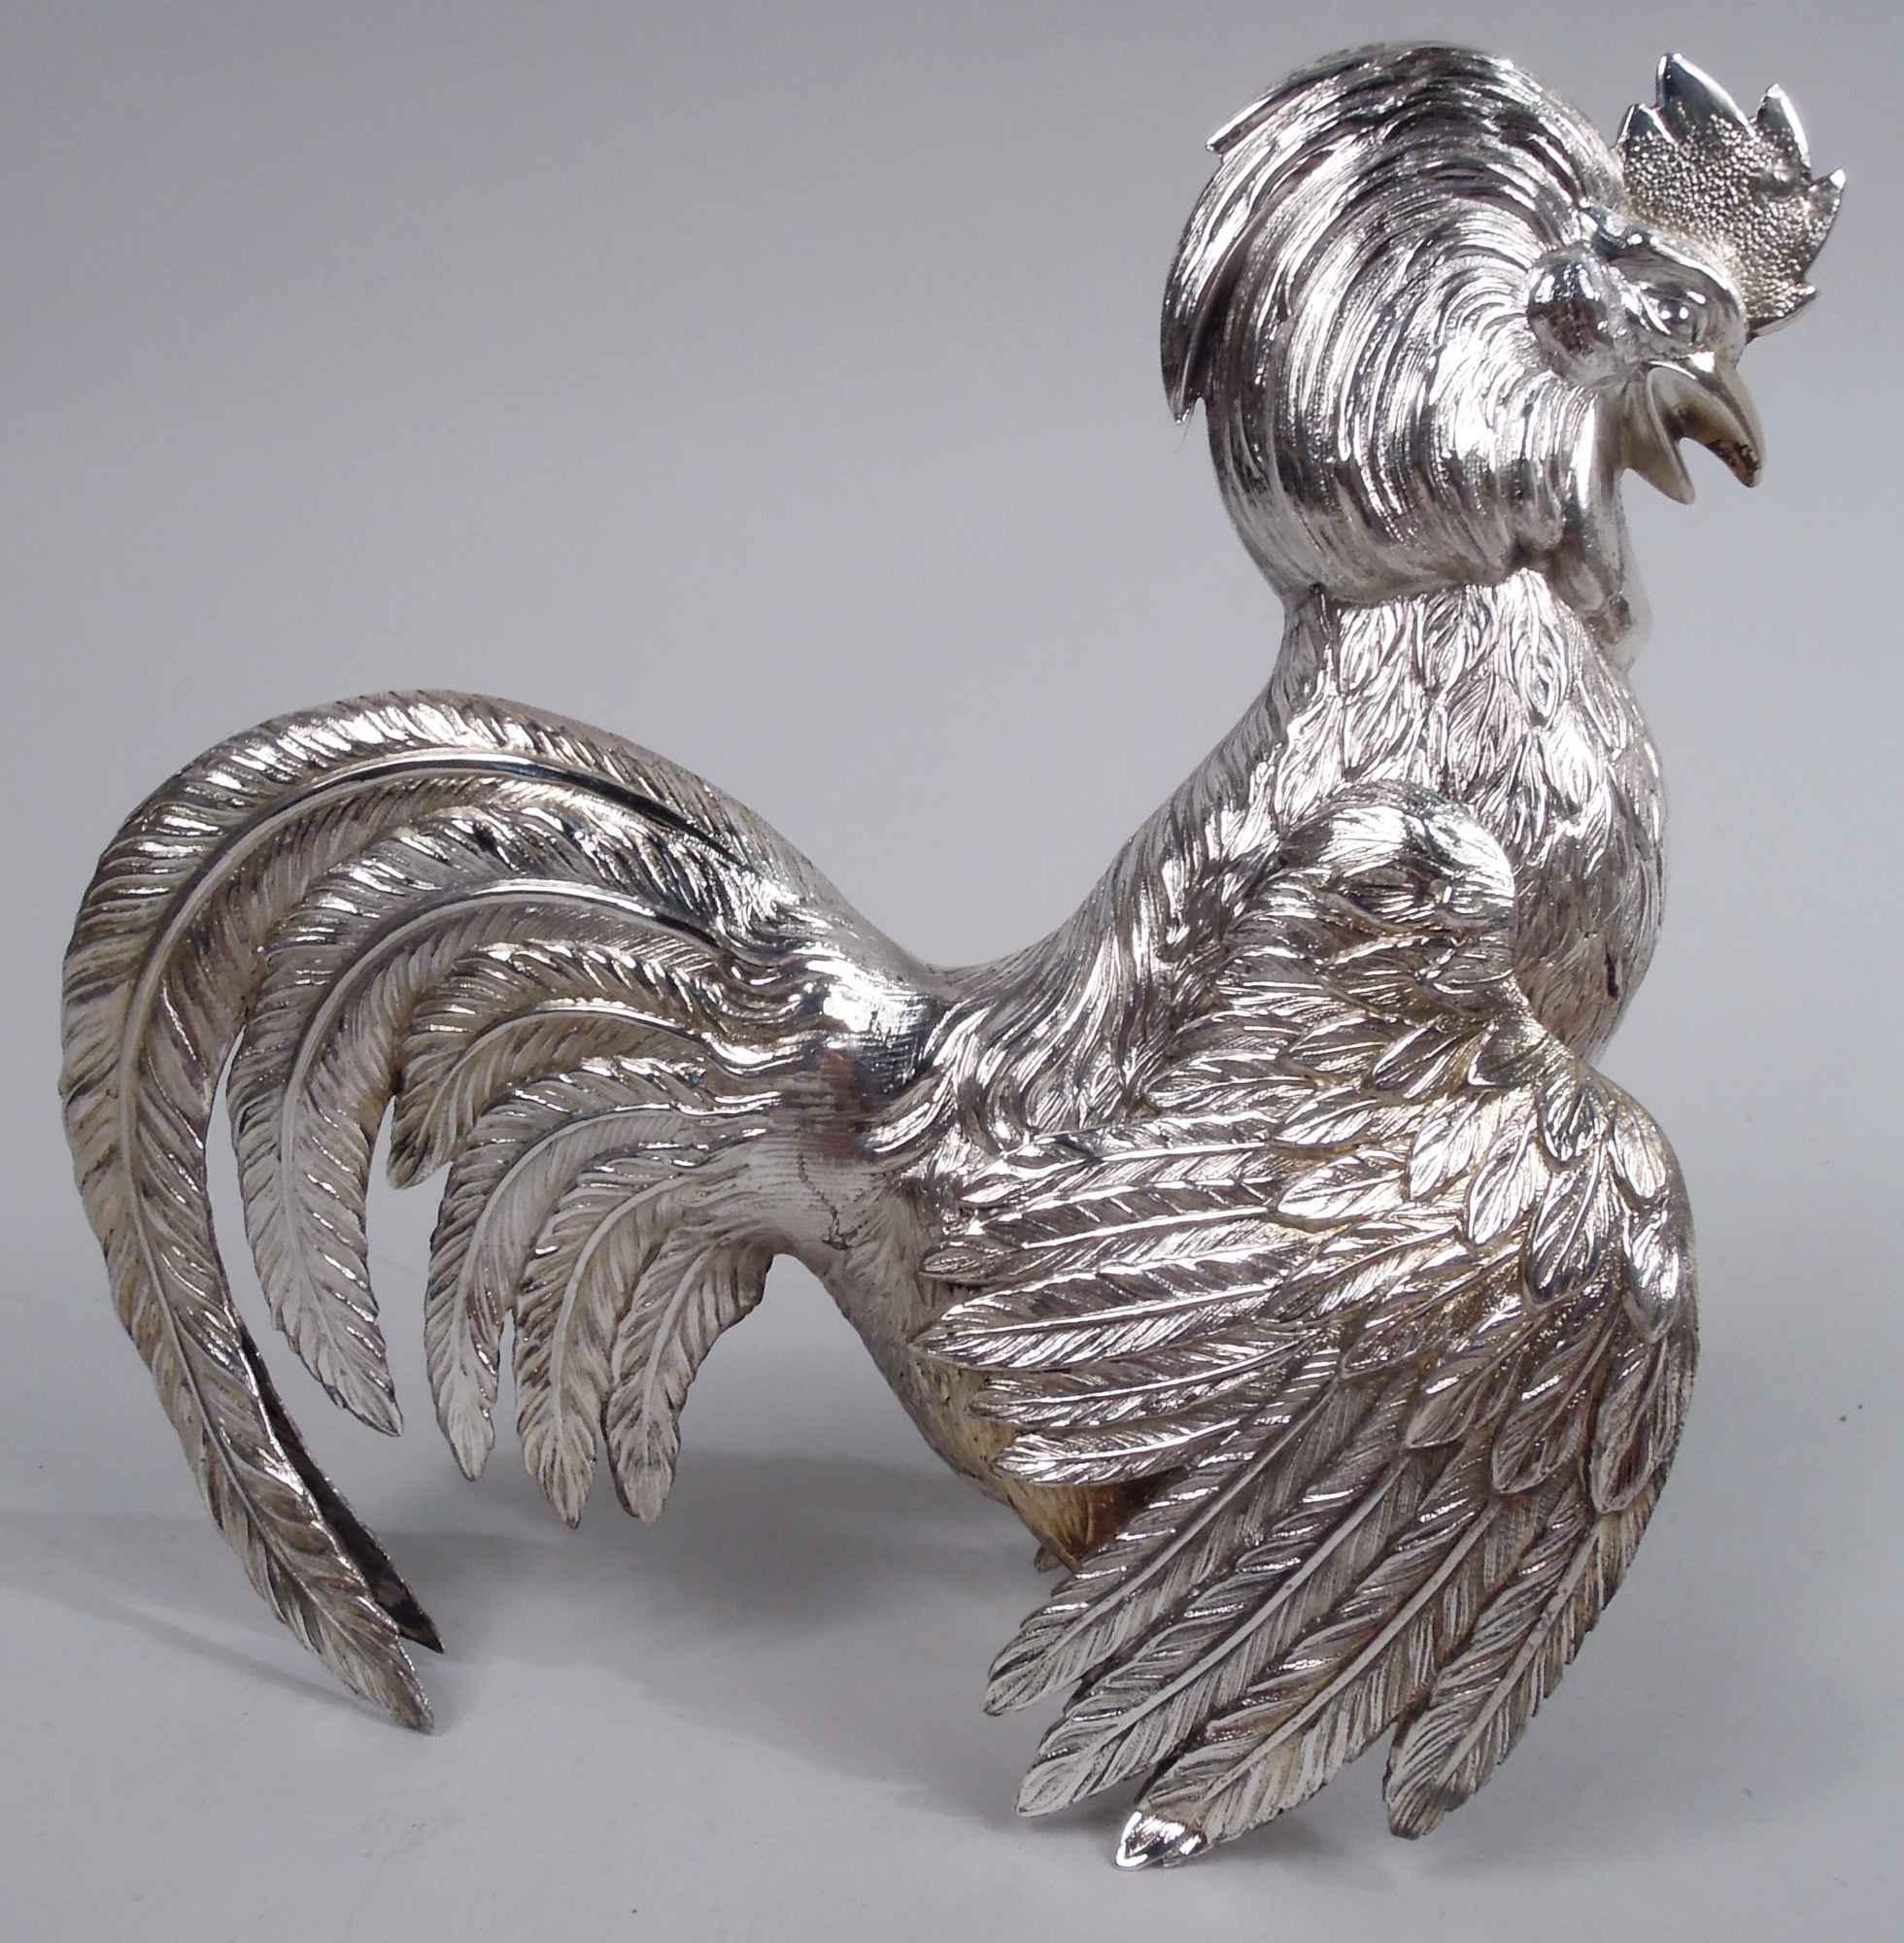 Paire d'oiseaux en argent allemand, vers 1920. Un coq et une poule aux ailes repliées et à la queue flamboyante. Le coq, qui a une couronne hirsute et des serres relevées, regarde vers le bas, tandis que la poule, qui a une petite couronne taillée